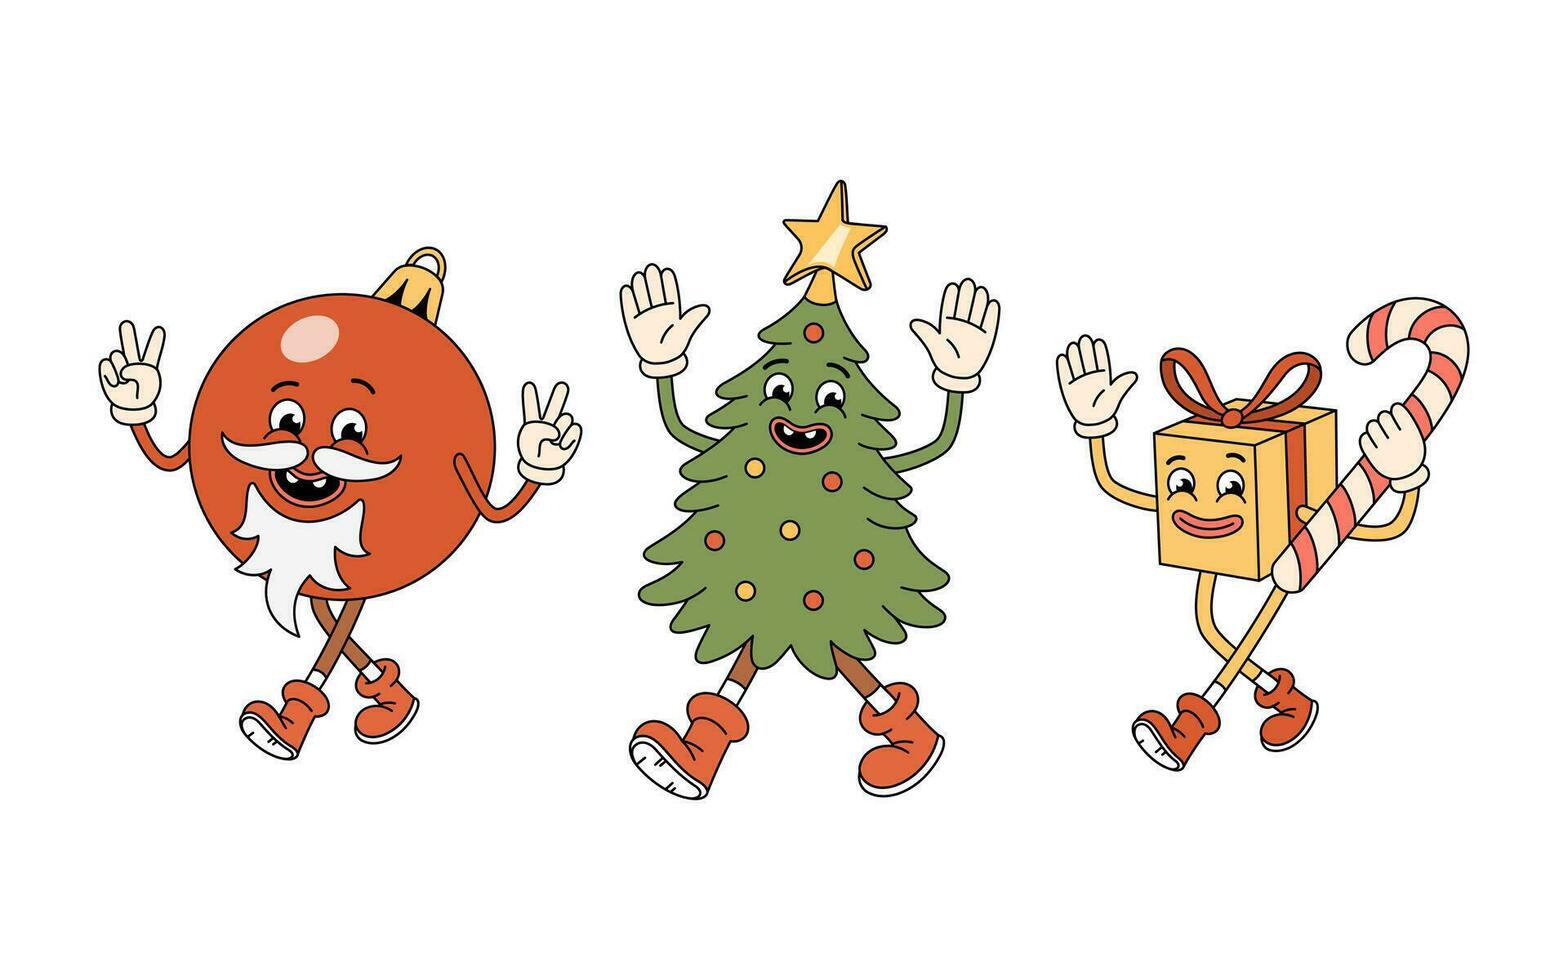 häftig jul tecken - träd, gåva låda med godis sockerrör, röd boll leksak med vit skägg. häftig jul träd karaktär. retro häftig tecknad serie tecken i klotter stil. vektor illustration.